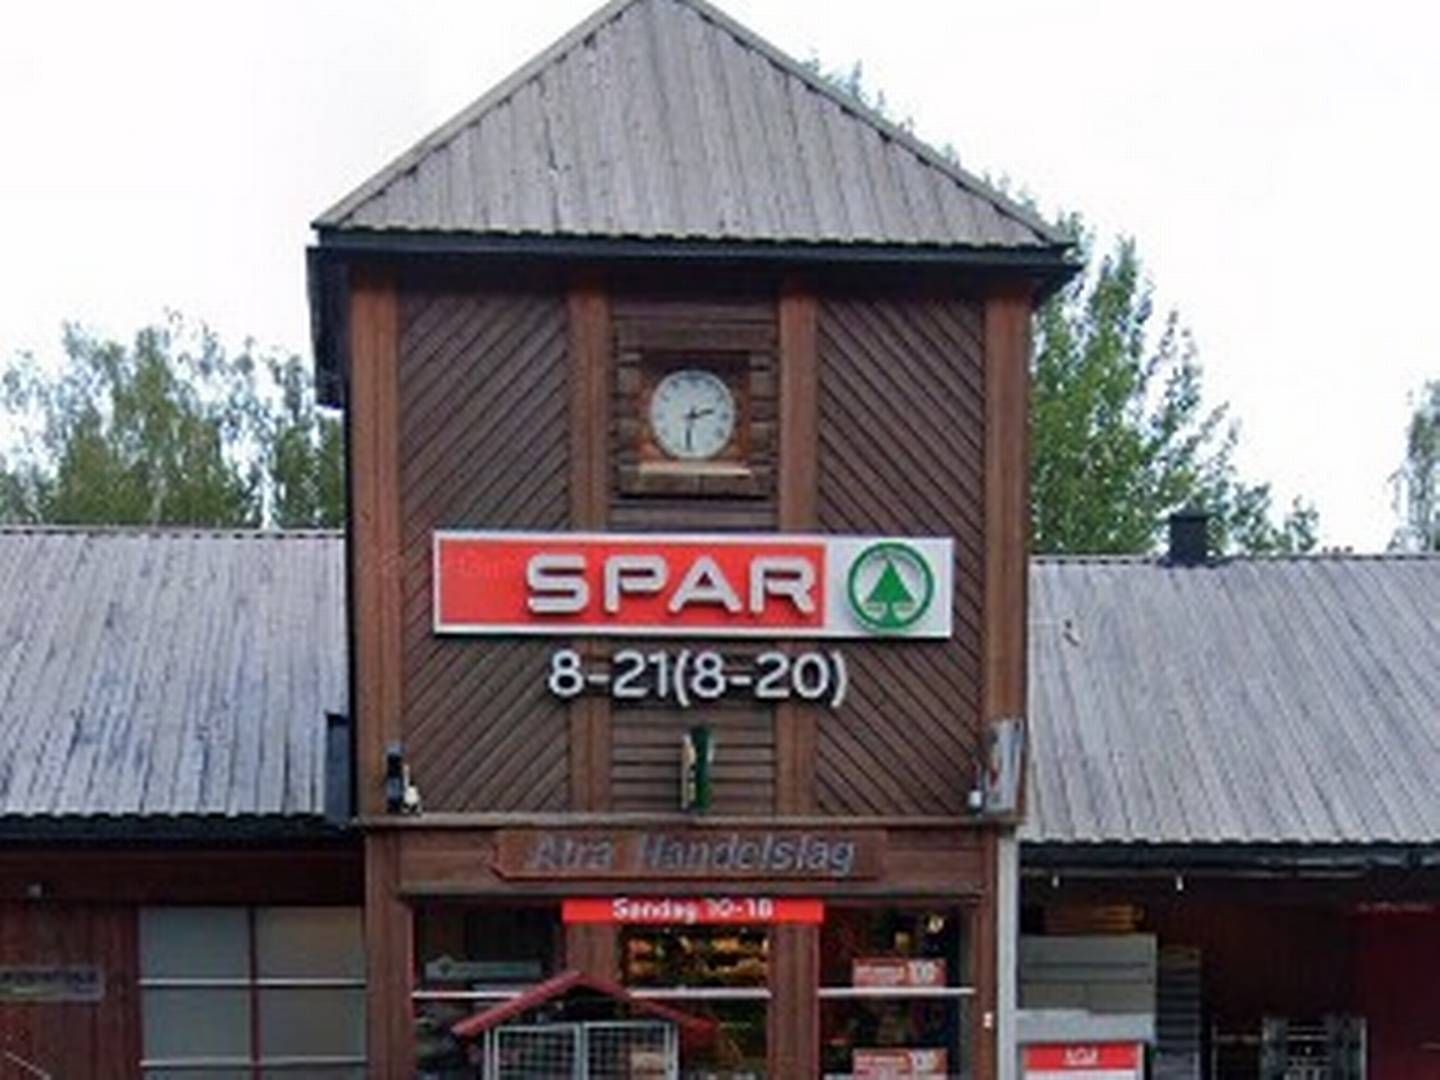 FØRST UT: Spar-butikken i Atrå blir landets første døgnåpne og selvbetjente Spar-butikk. | Foto: Google Street View